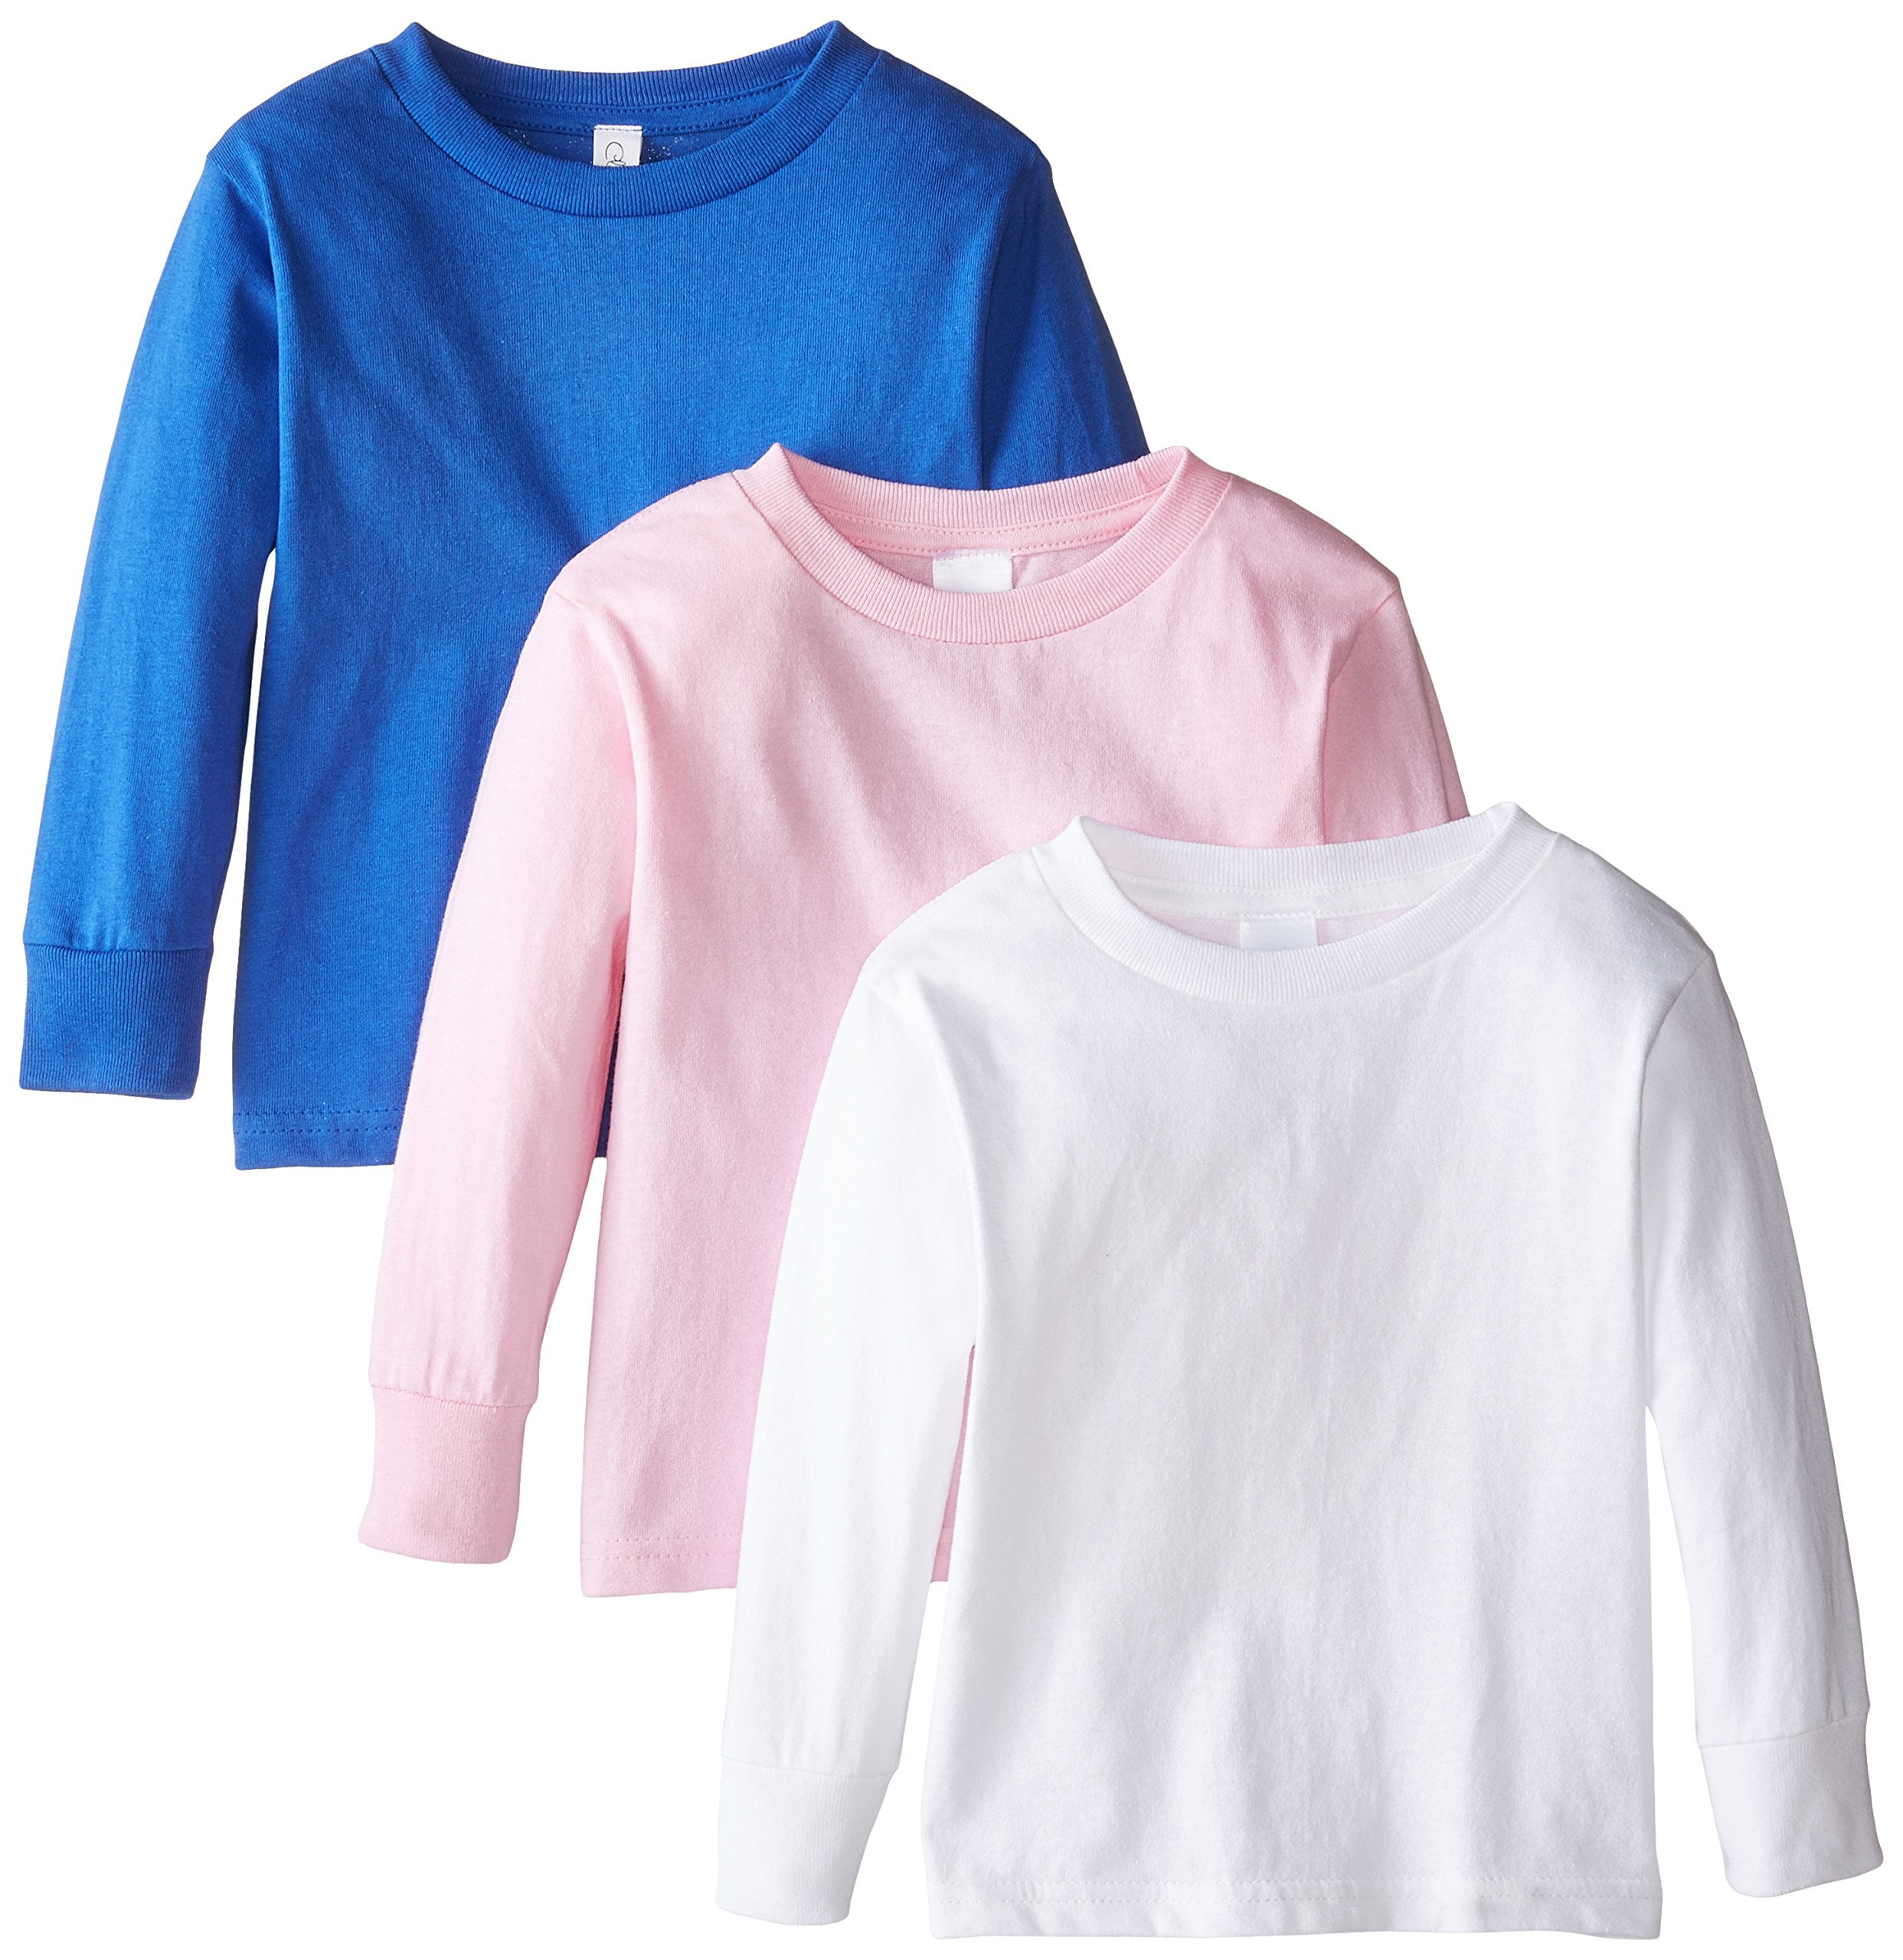 3 Pack Girls Long Sleeve Plain Basic 100% Cotton Top Kids T-Shirt Tops Crew Uniform Tee